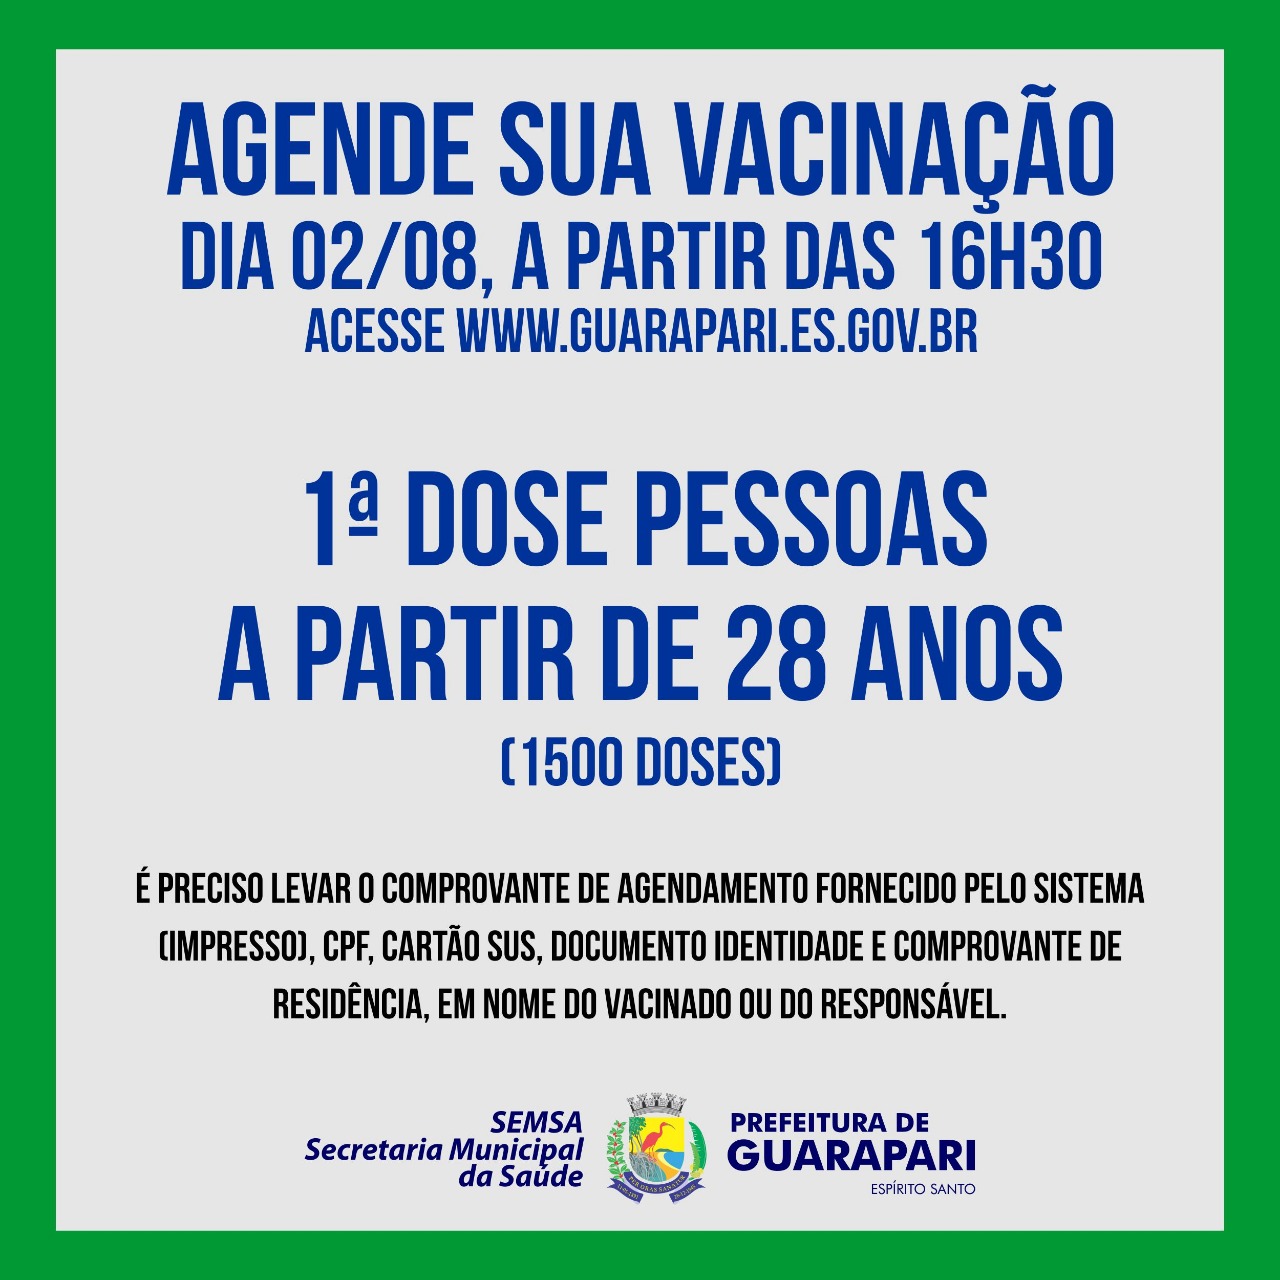 Vacinação Covid-19: Prefeitura Guarapari abre novo agendamento para pessoas acima de 28 anos